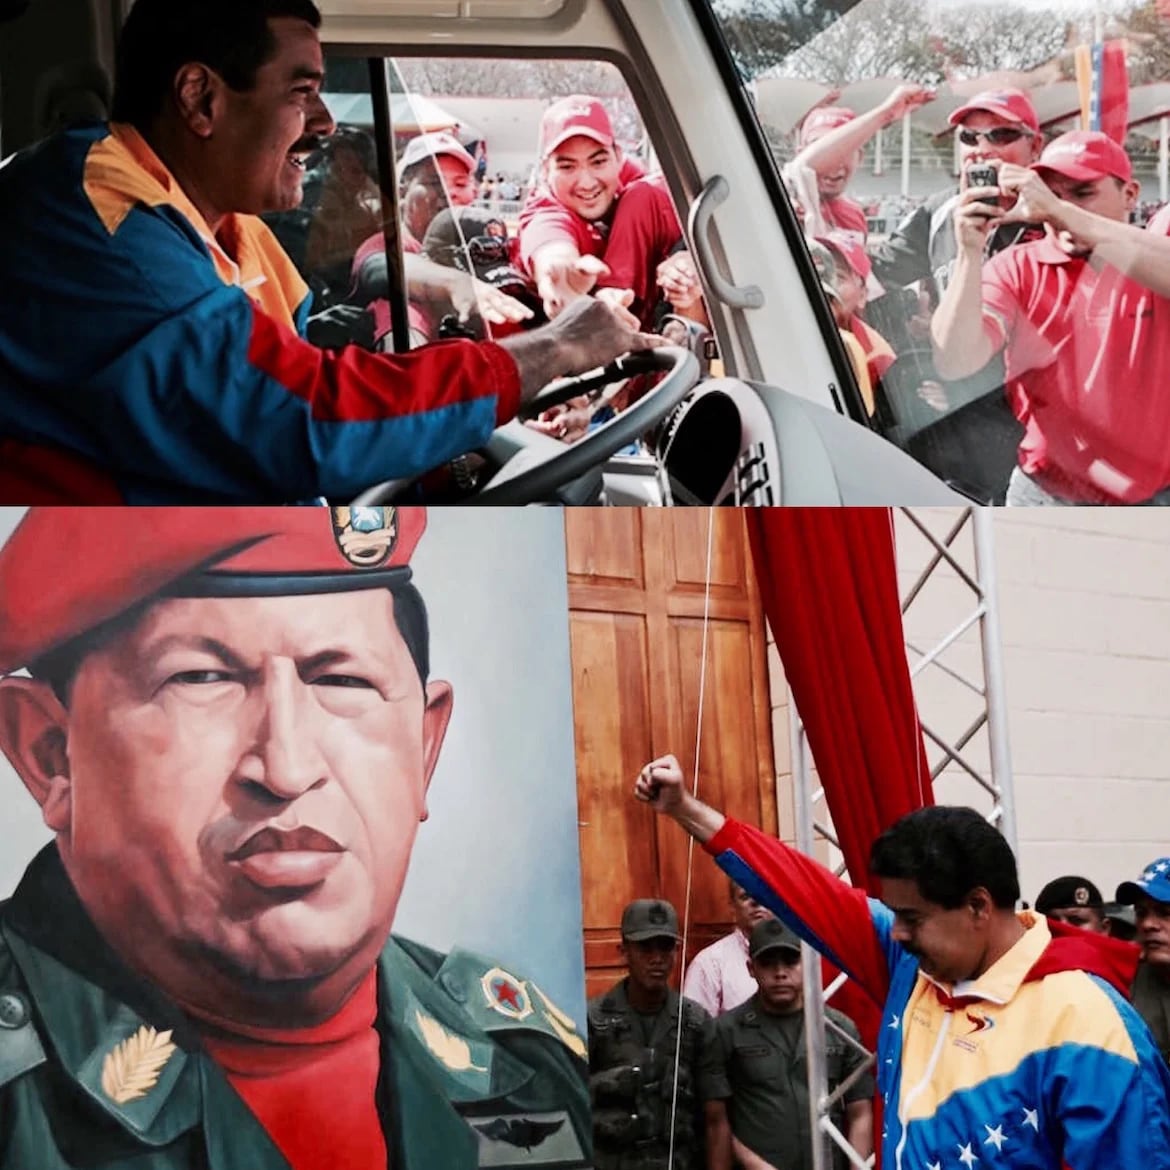 Irónicamente, Nicolás Maduro ganó en parte el apoyo popular al momento de suceder a Hugo Chávez en 2013 debido al hecho de que representaba al “hombre del pueblo”, gracias a su pasado como conductor de buses